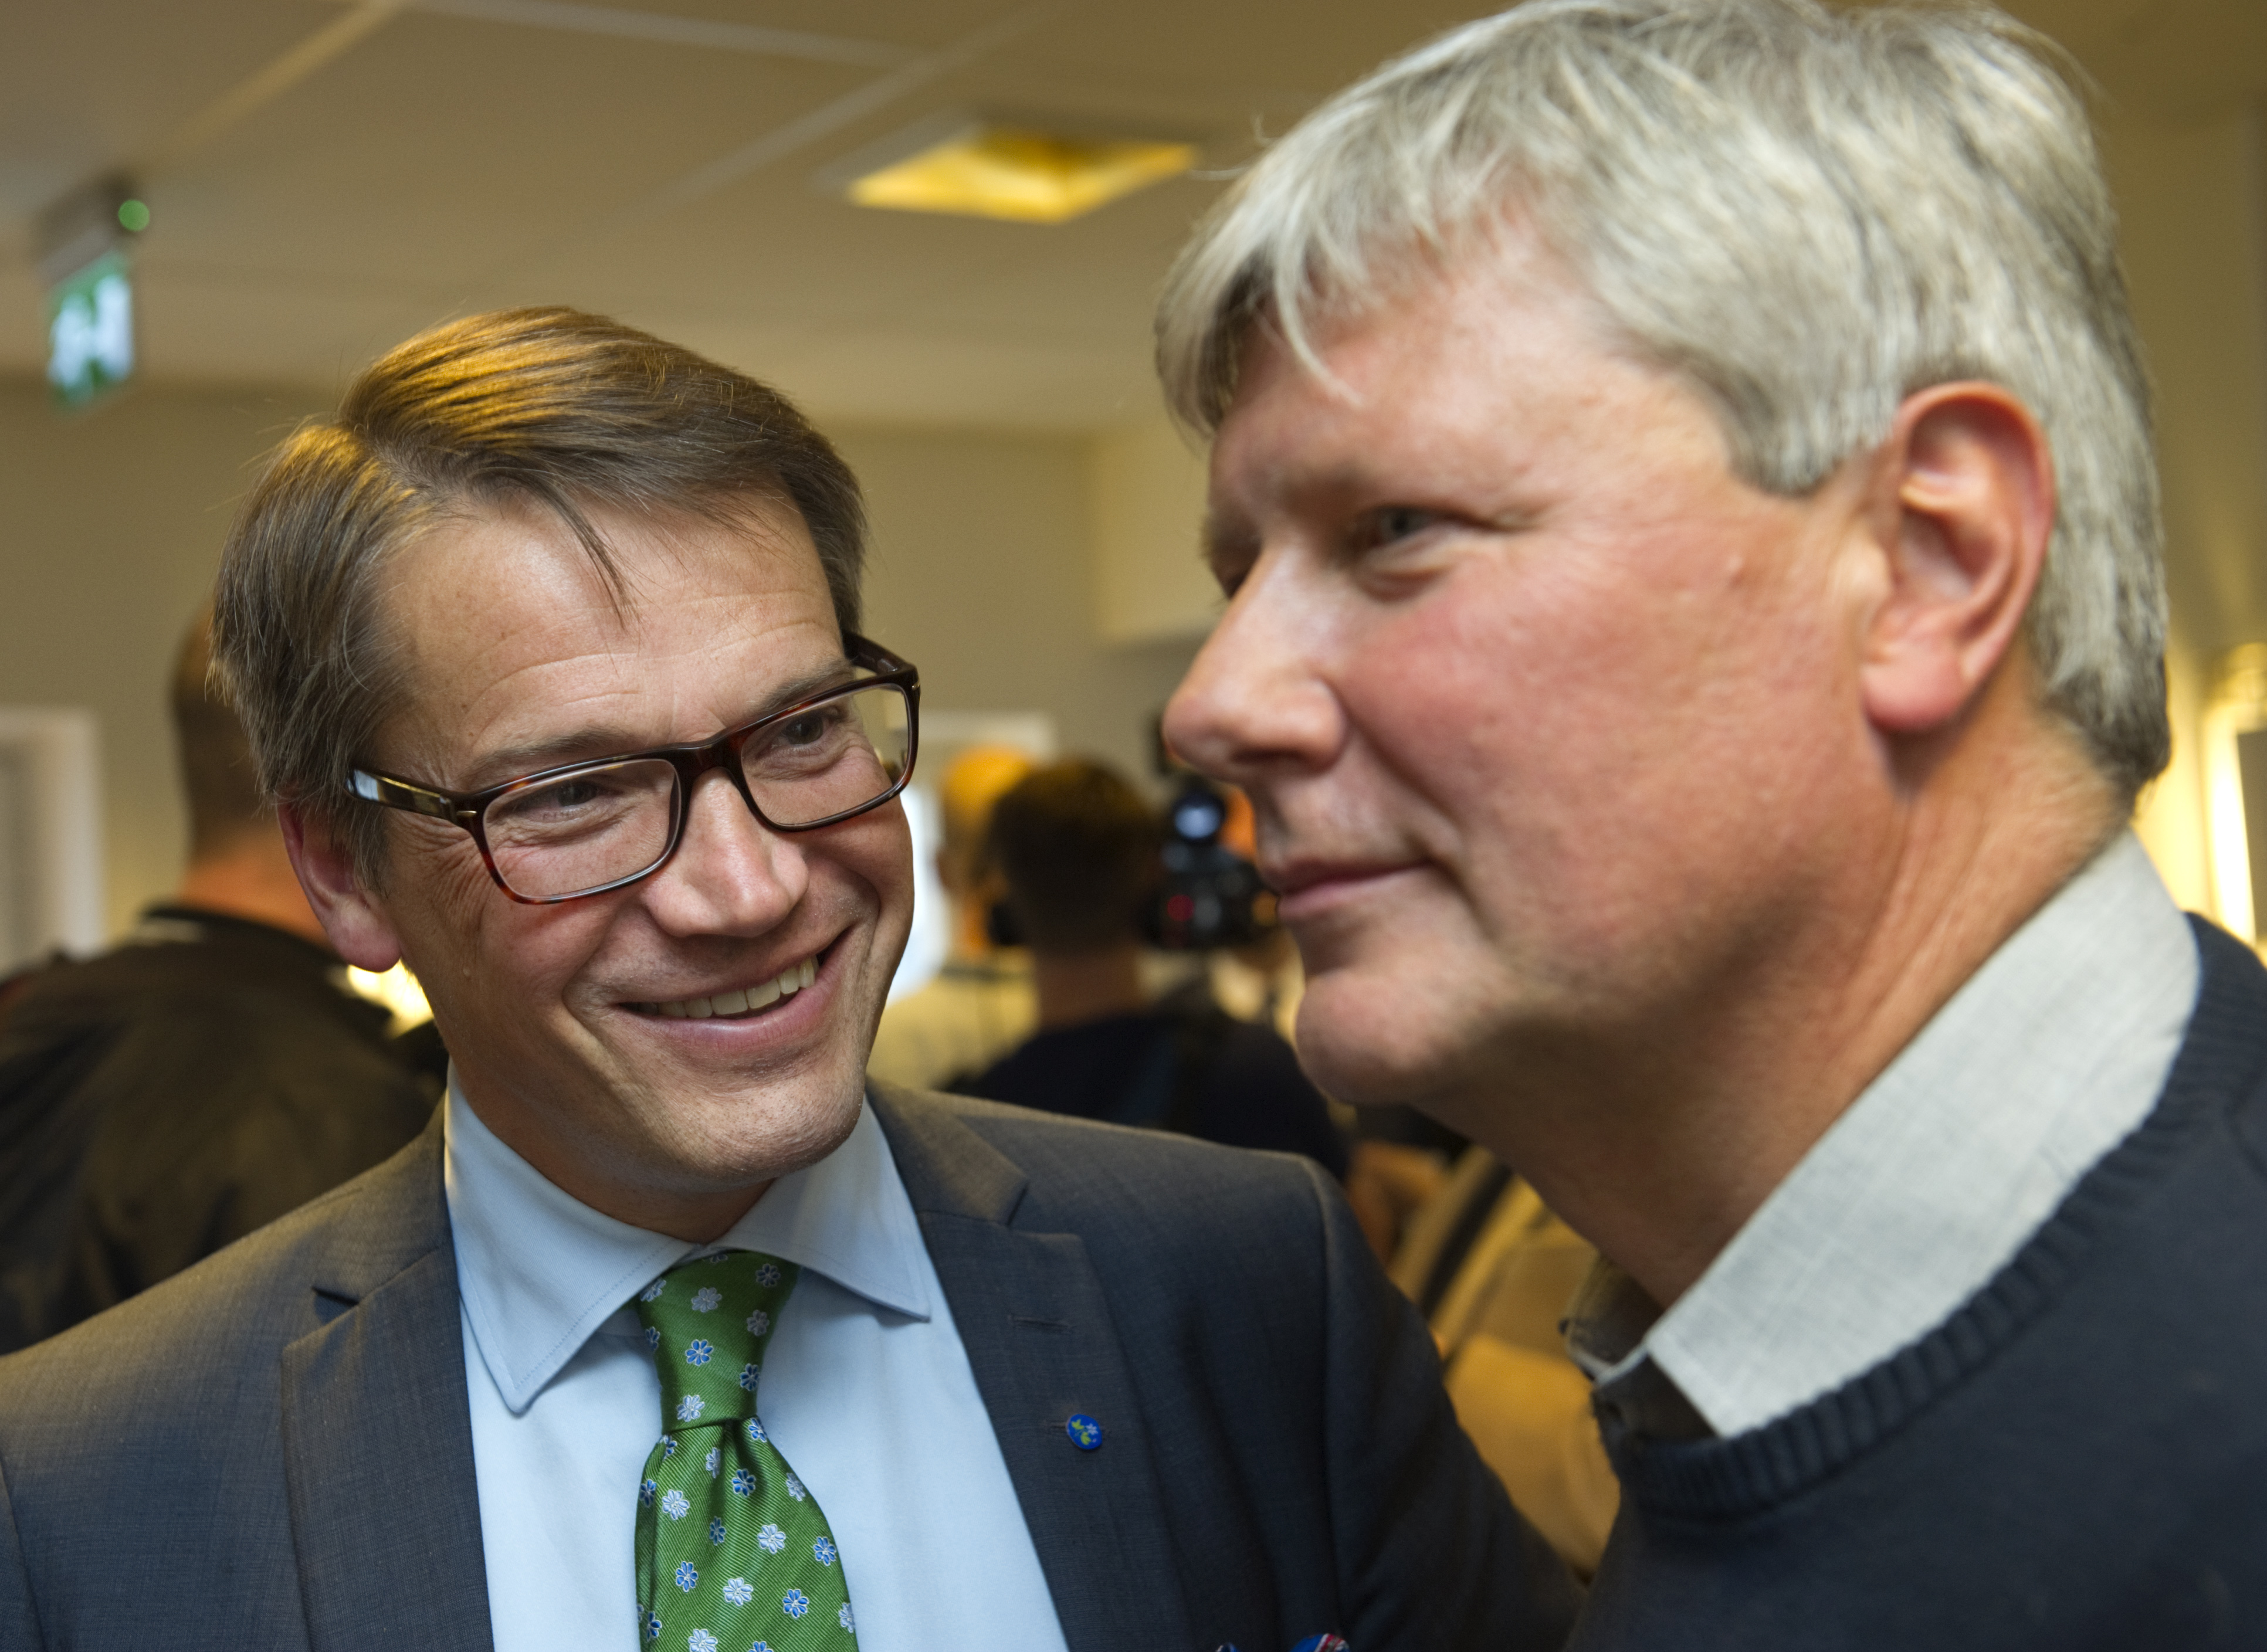 Kd-ledaren Göran Hägglund och vänsterledaren Lars Ohly kan räddas av taktikröstarna - "kyrkobroder fyra procent" respektive "kamrat 4 procent".